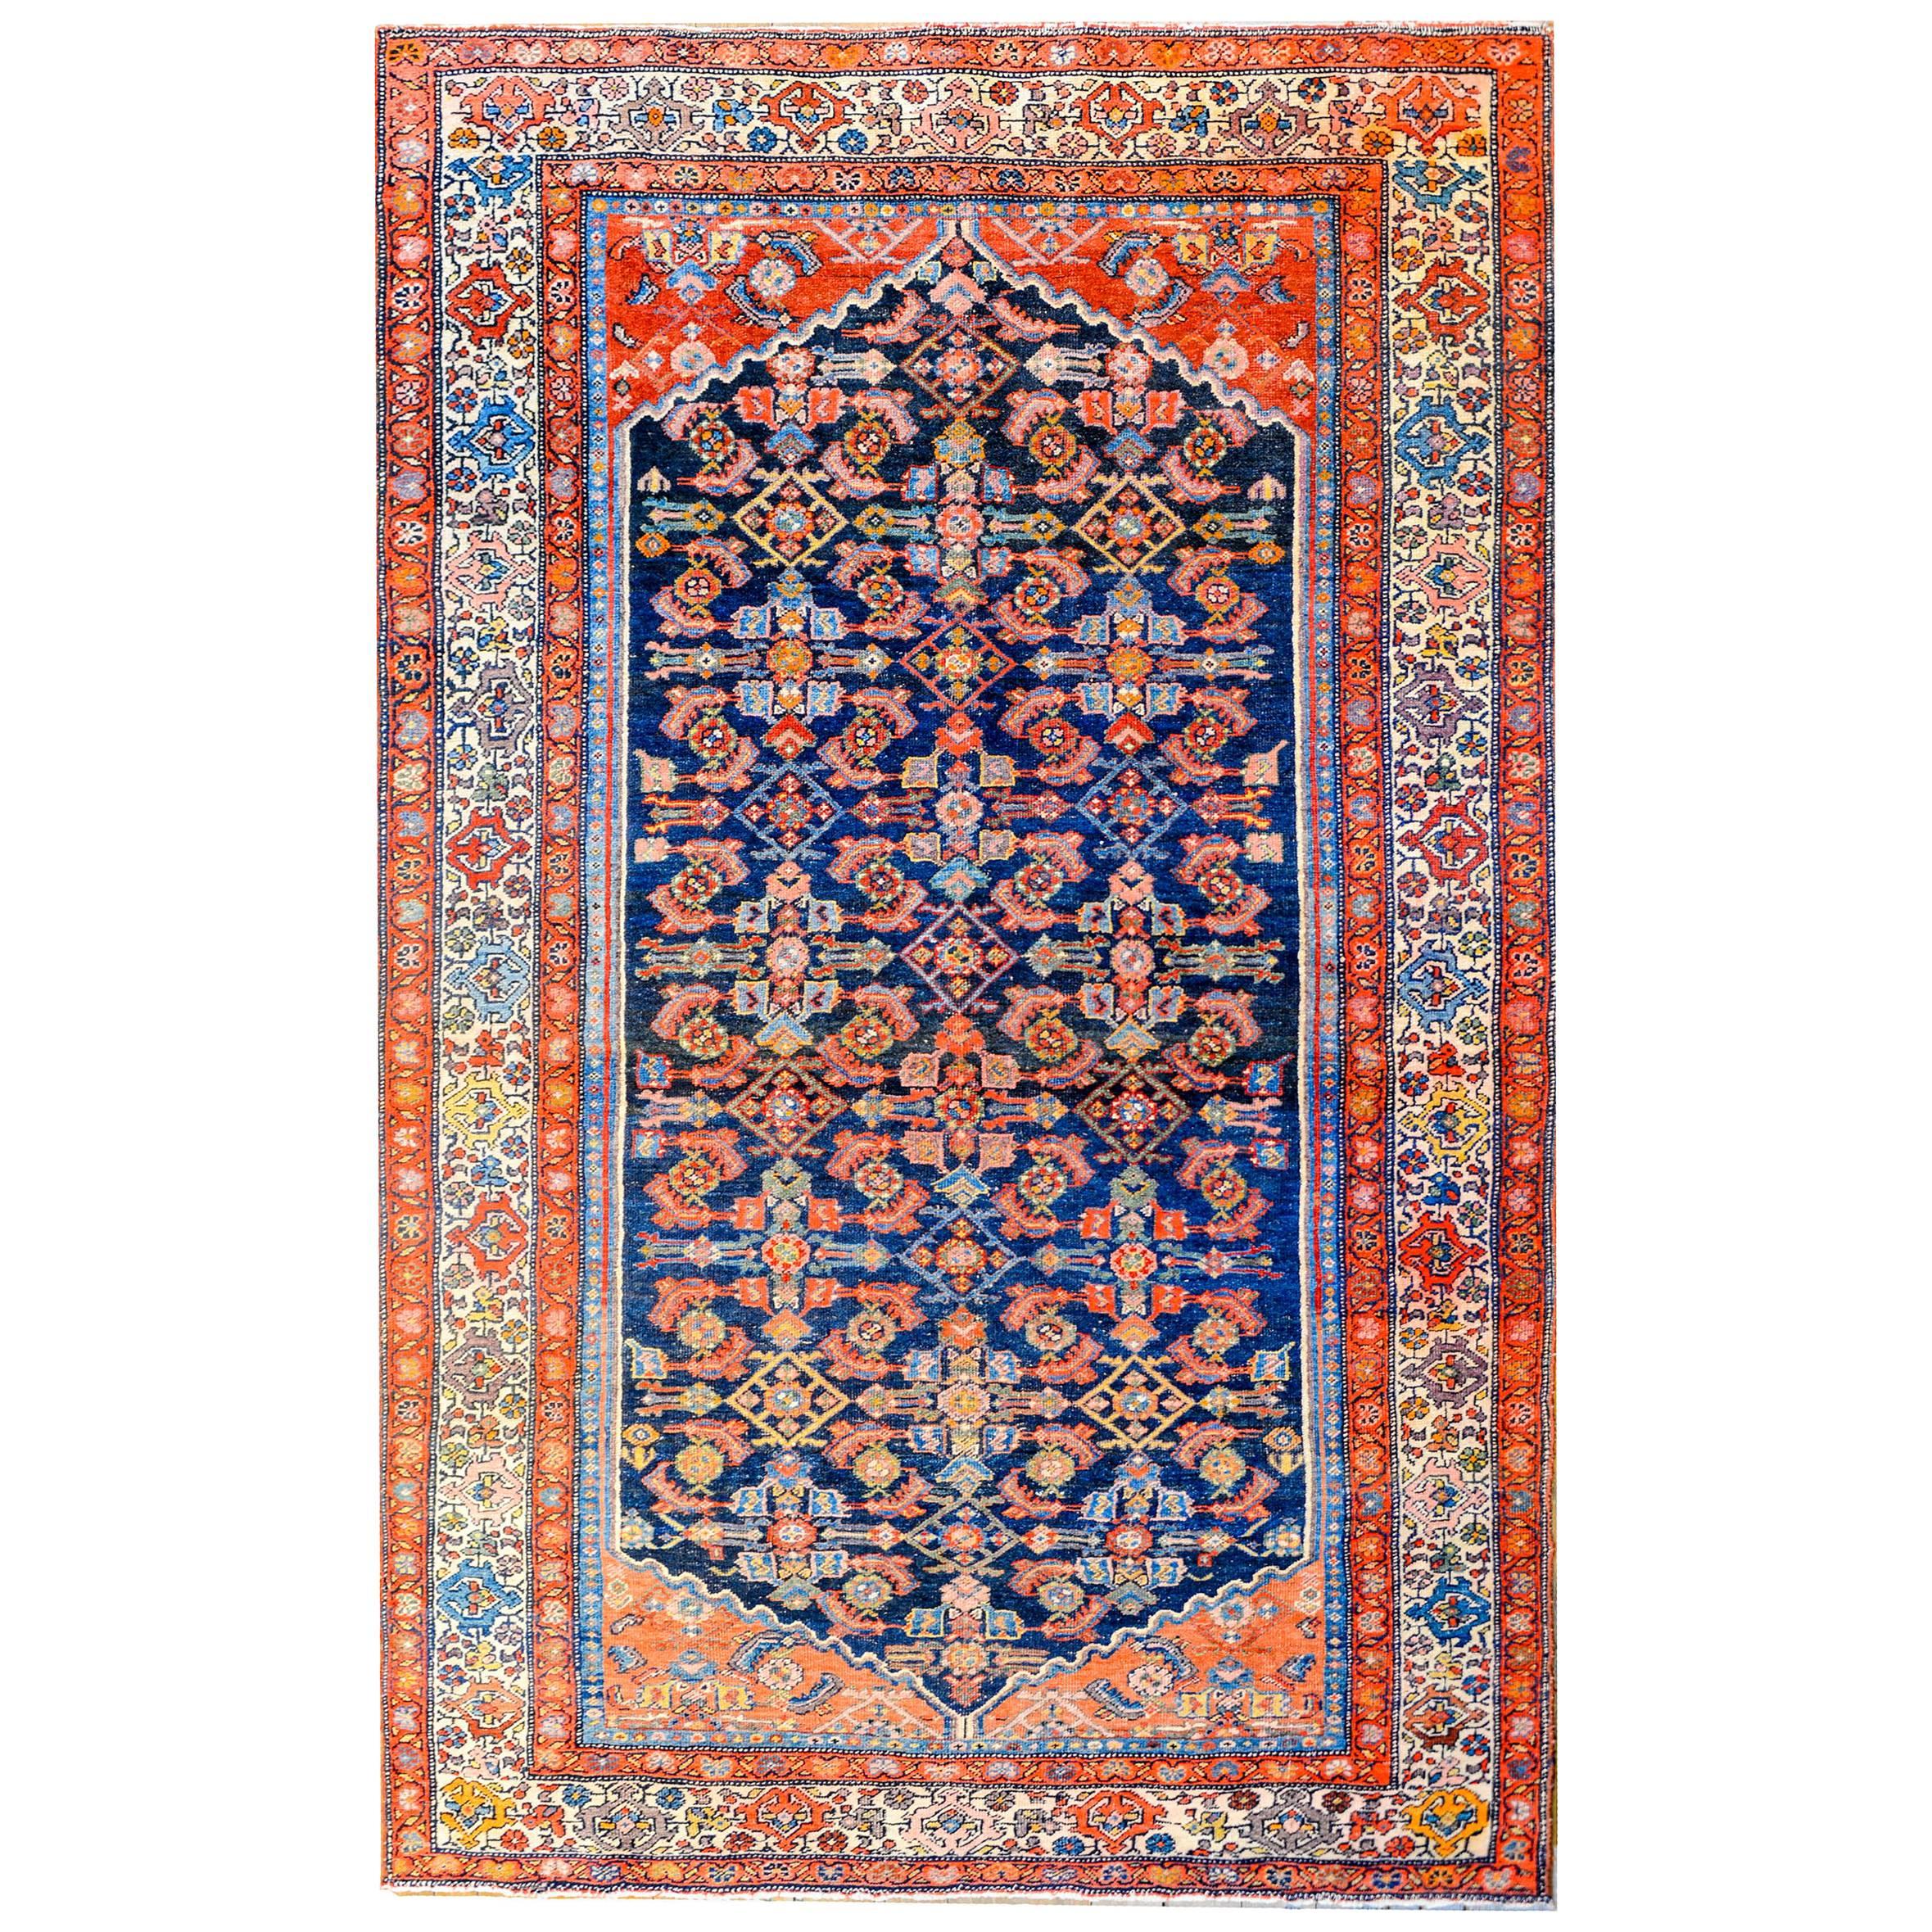 Bidjar-Teppich aus dem frühen 20. Jahrhundert, wunderbar